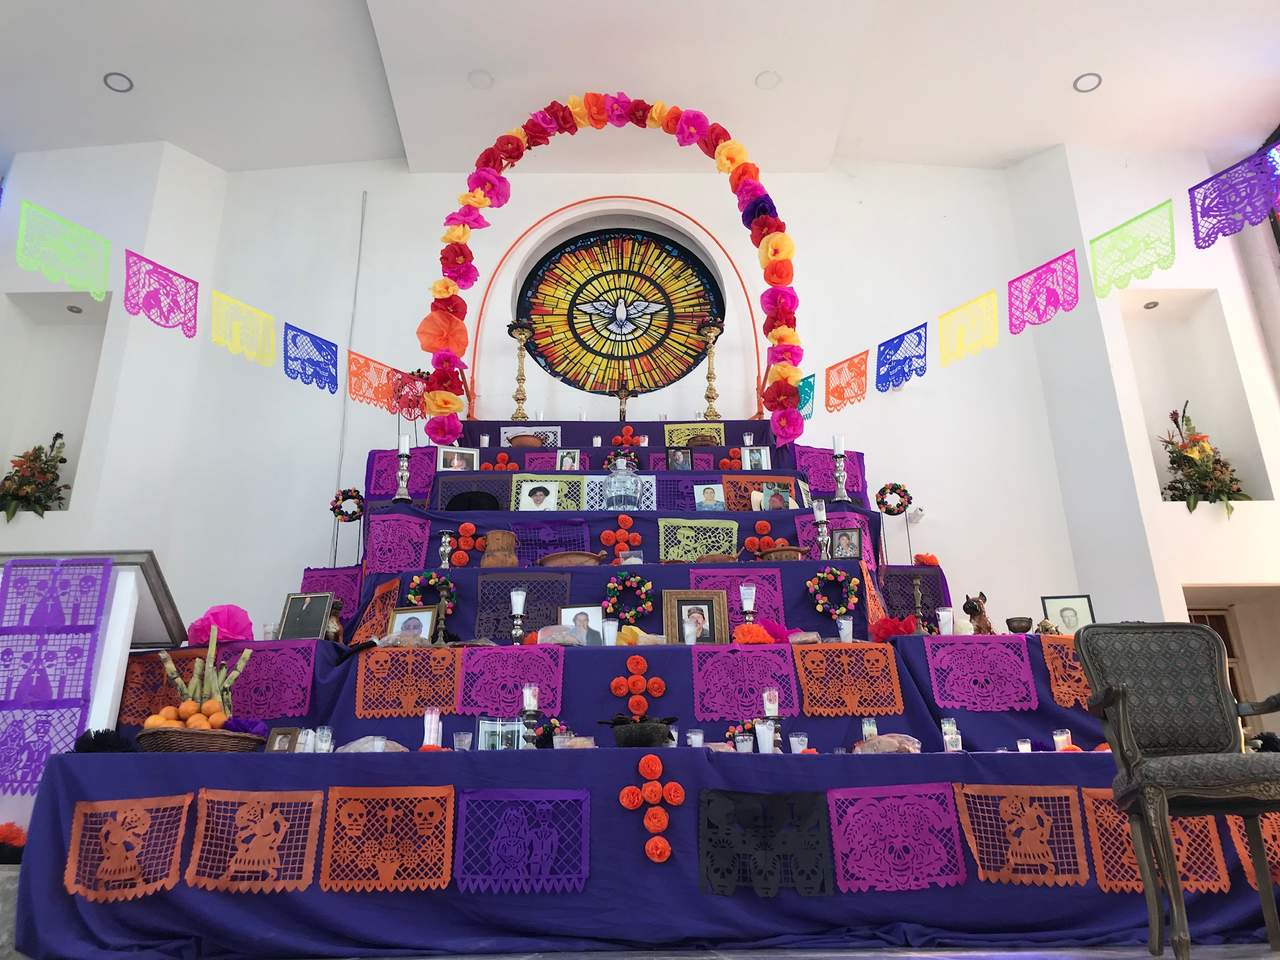 Toda la simbología de esta tradición católico-pagana se les explicó a los niños para que conozcan esta costumbre mexicana, para rescatarla y enseñarla a futuras generaciones.